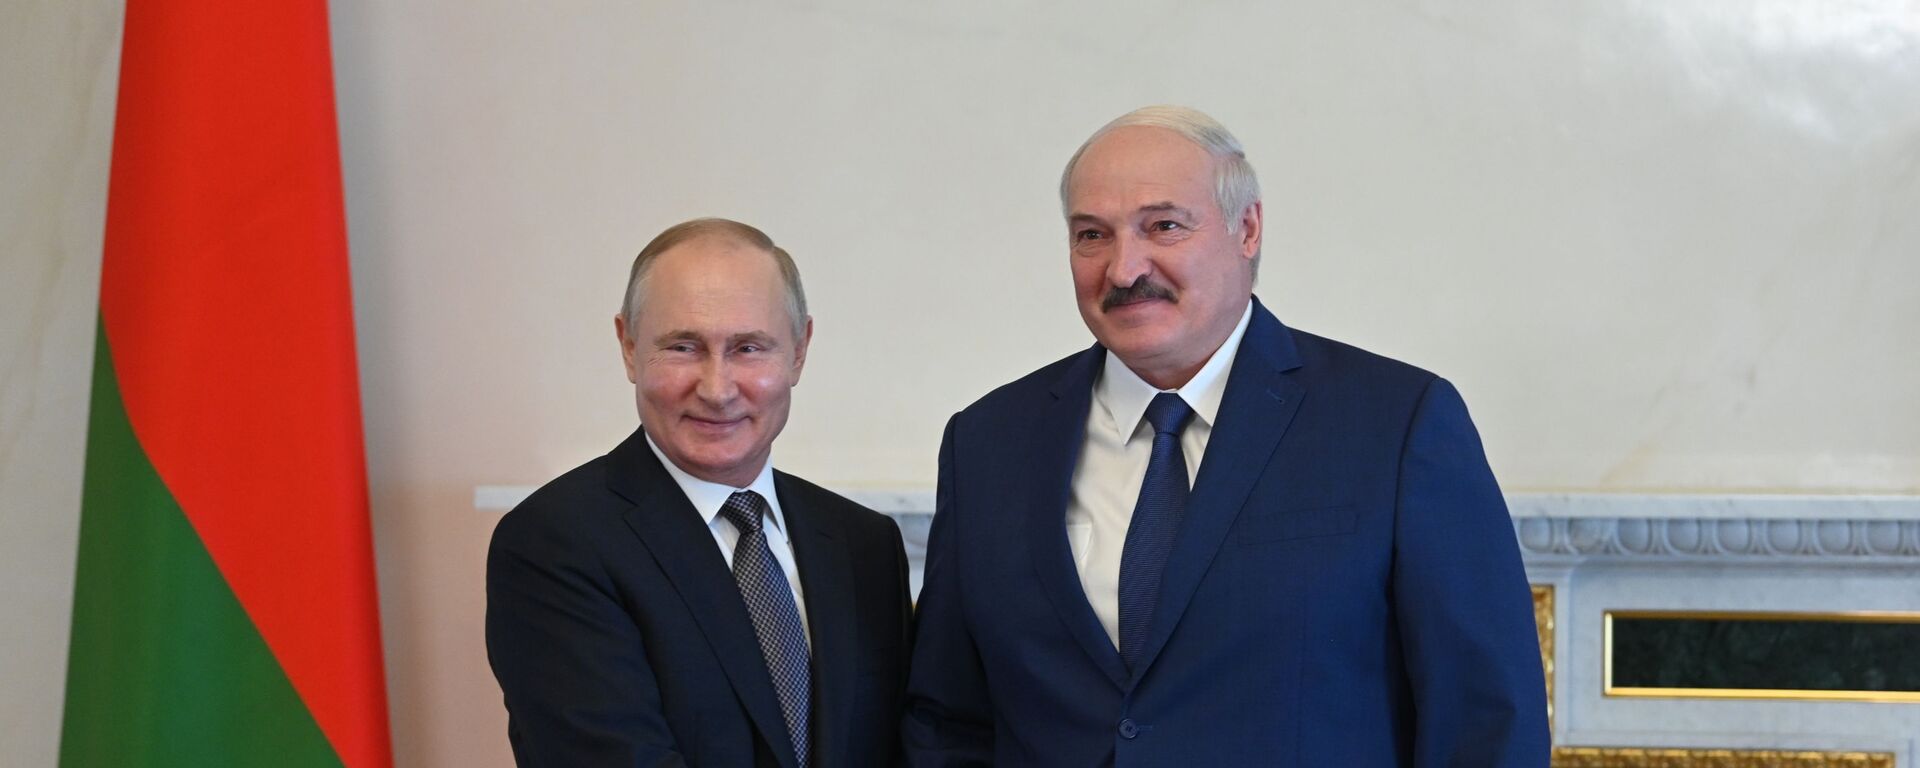 Президент РФ Владимир Путин и президент Белоруссии Александр Лукашенко - Sputnik Молдова, 1920, 04.11.2021